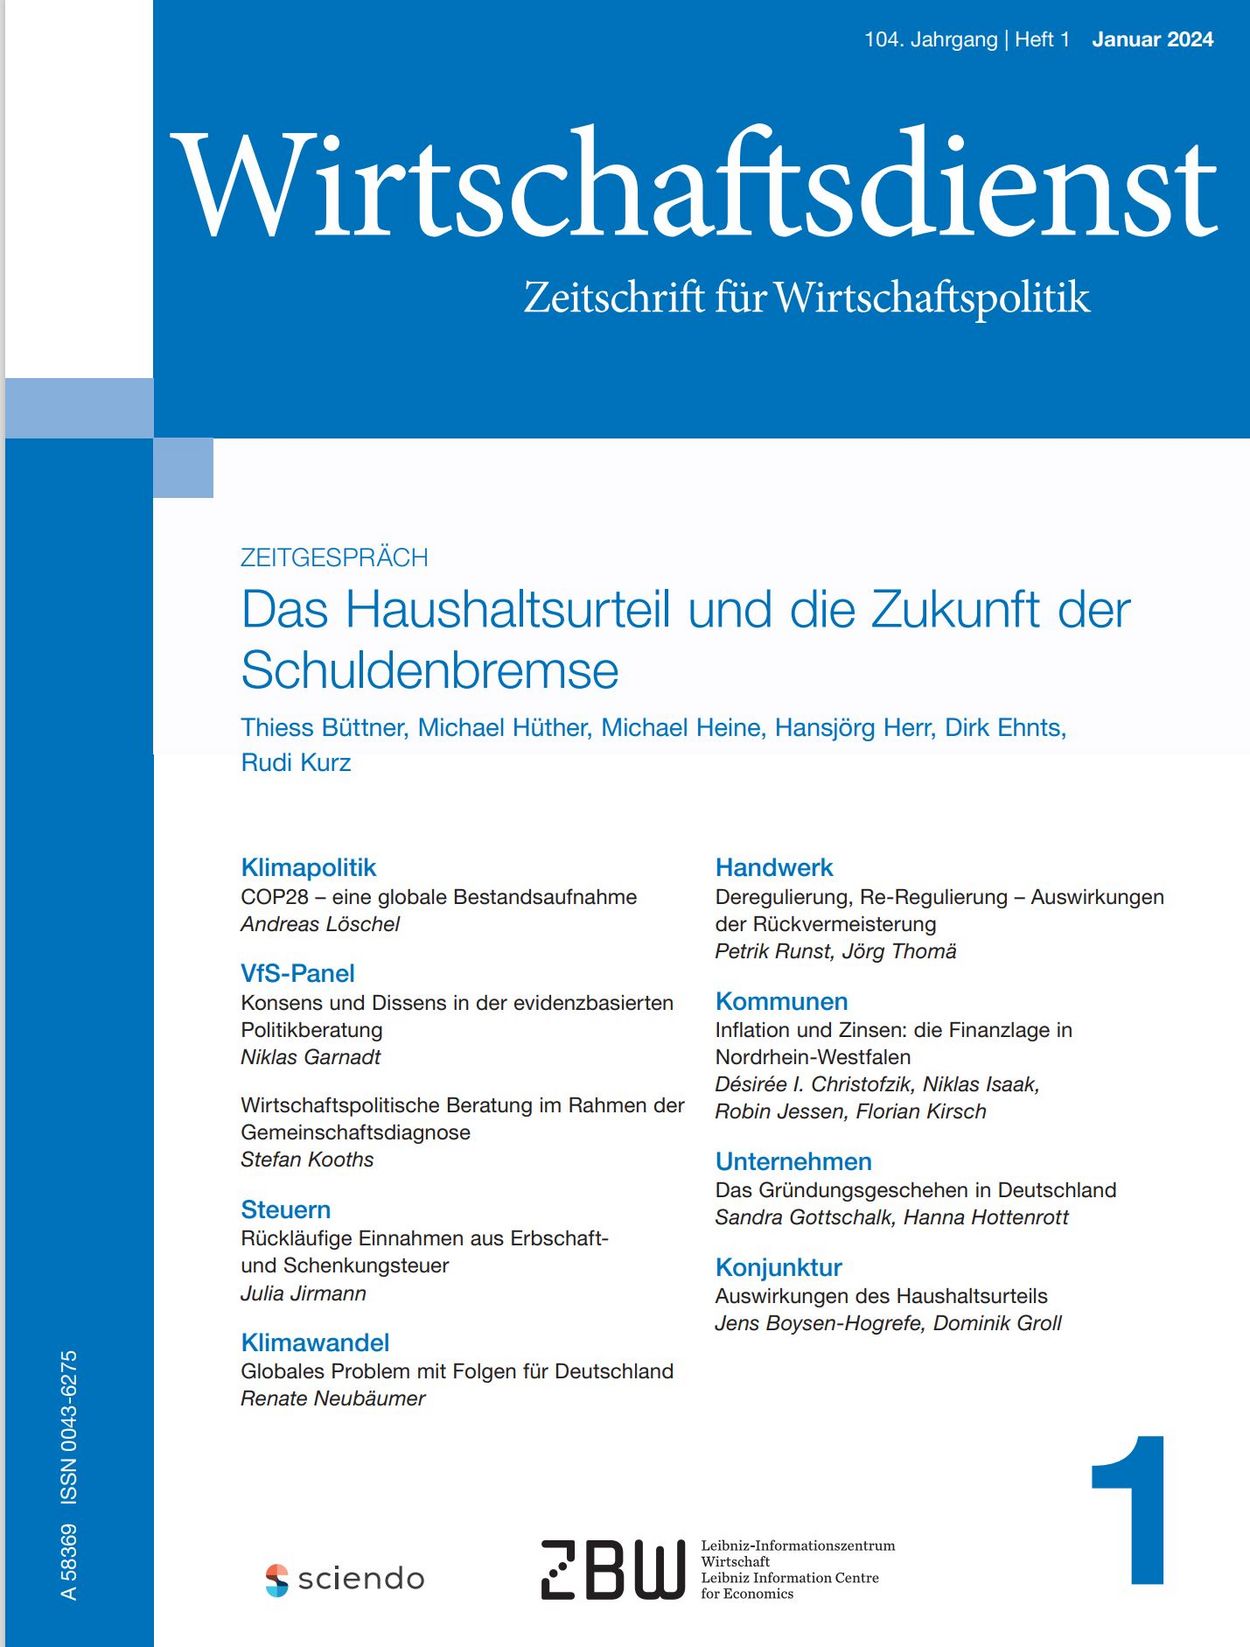 Deckblatt Wirtschaftsdienst Ausgabe 1, 2024. Zeitschrift für Wirtschaftspolitik.